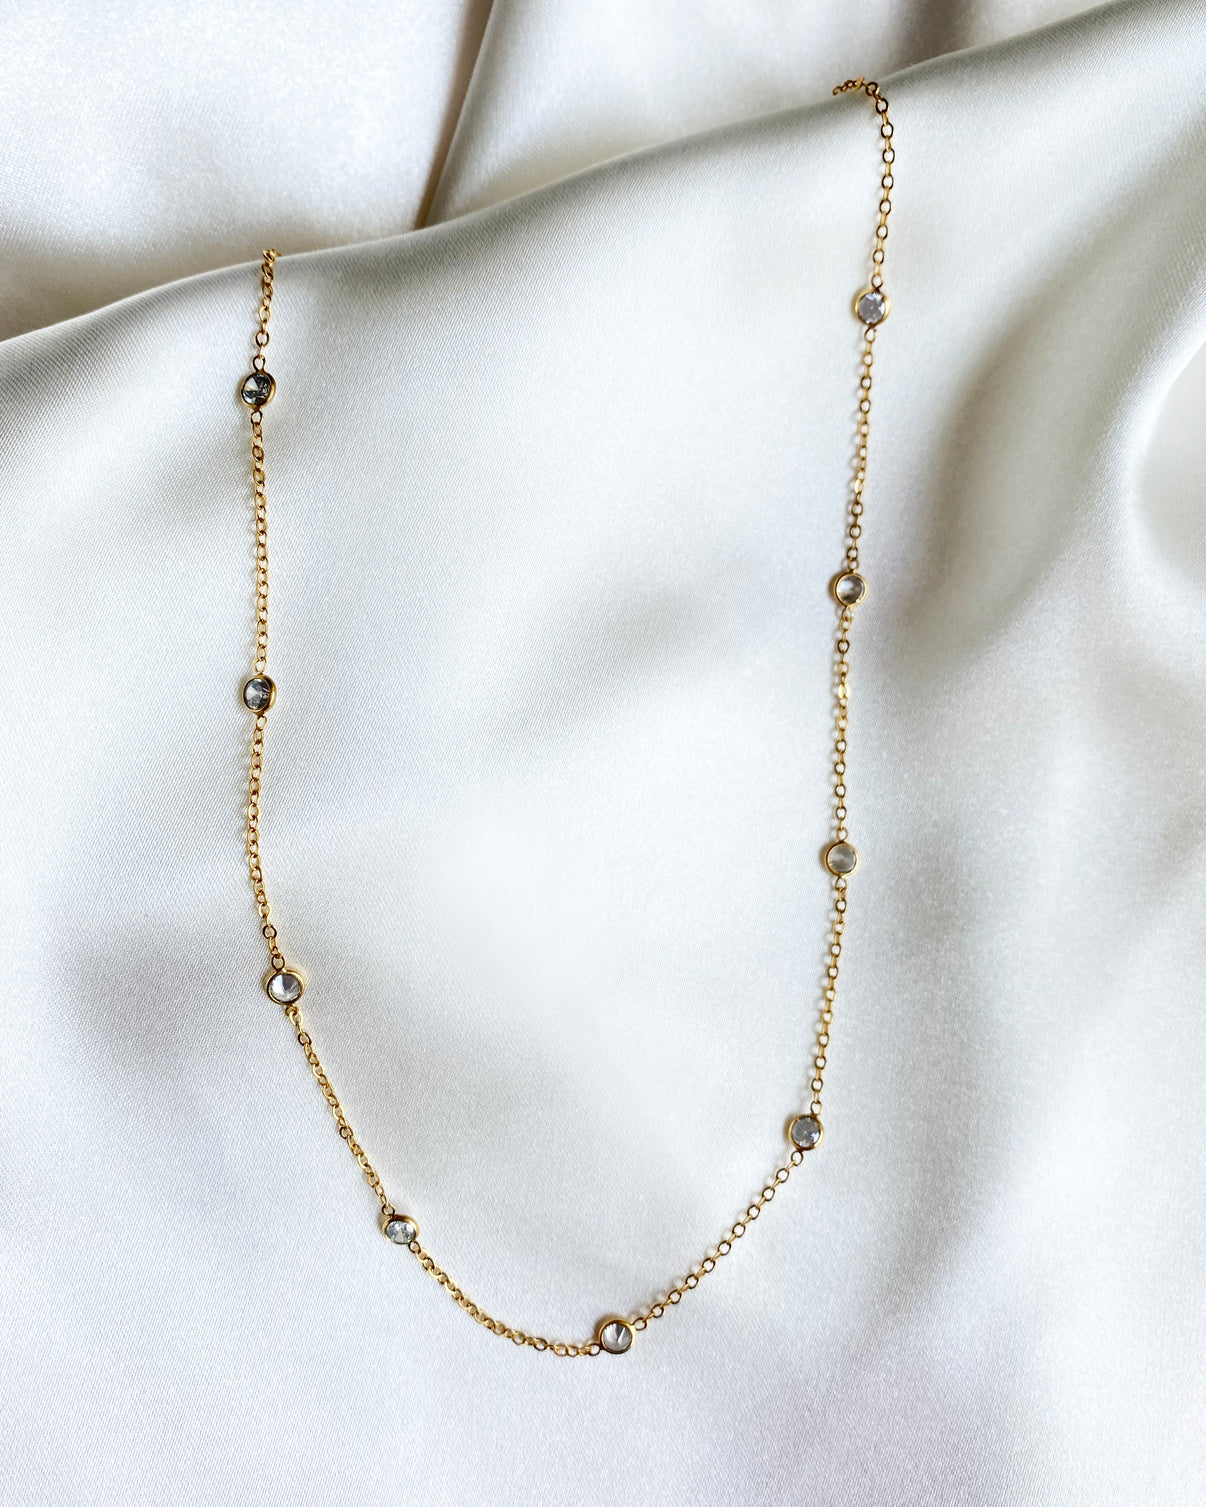 Poppy Chain – Fire & Honey Jewelry